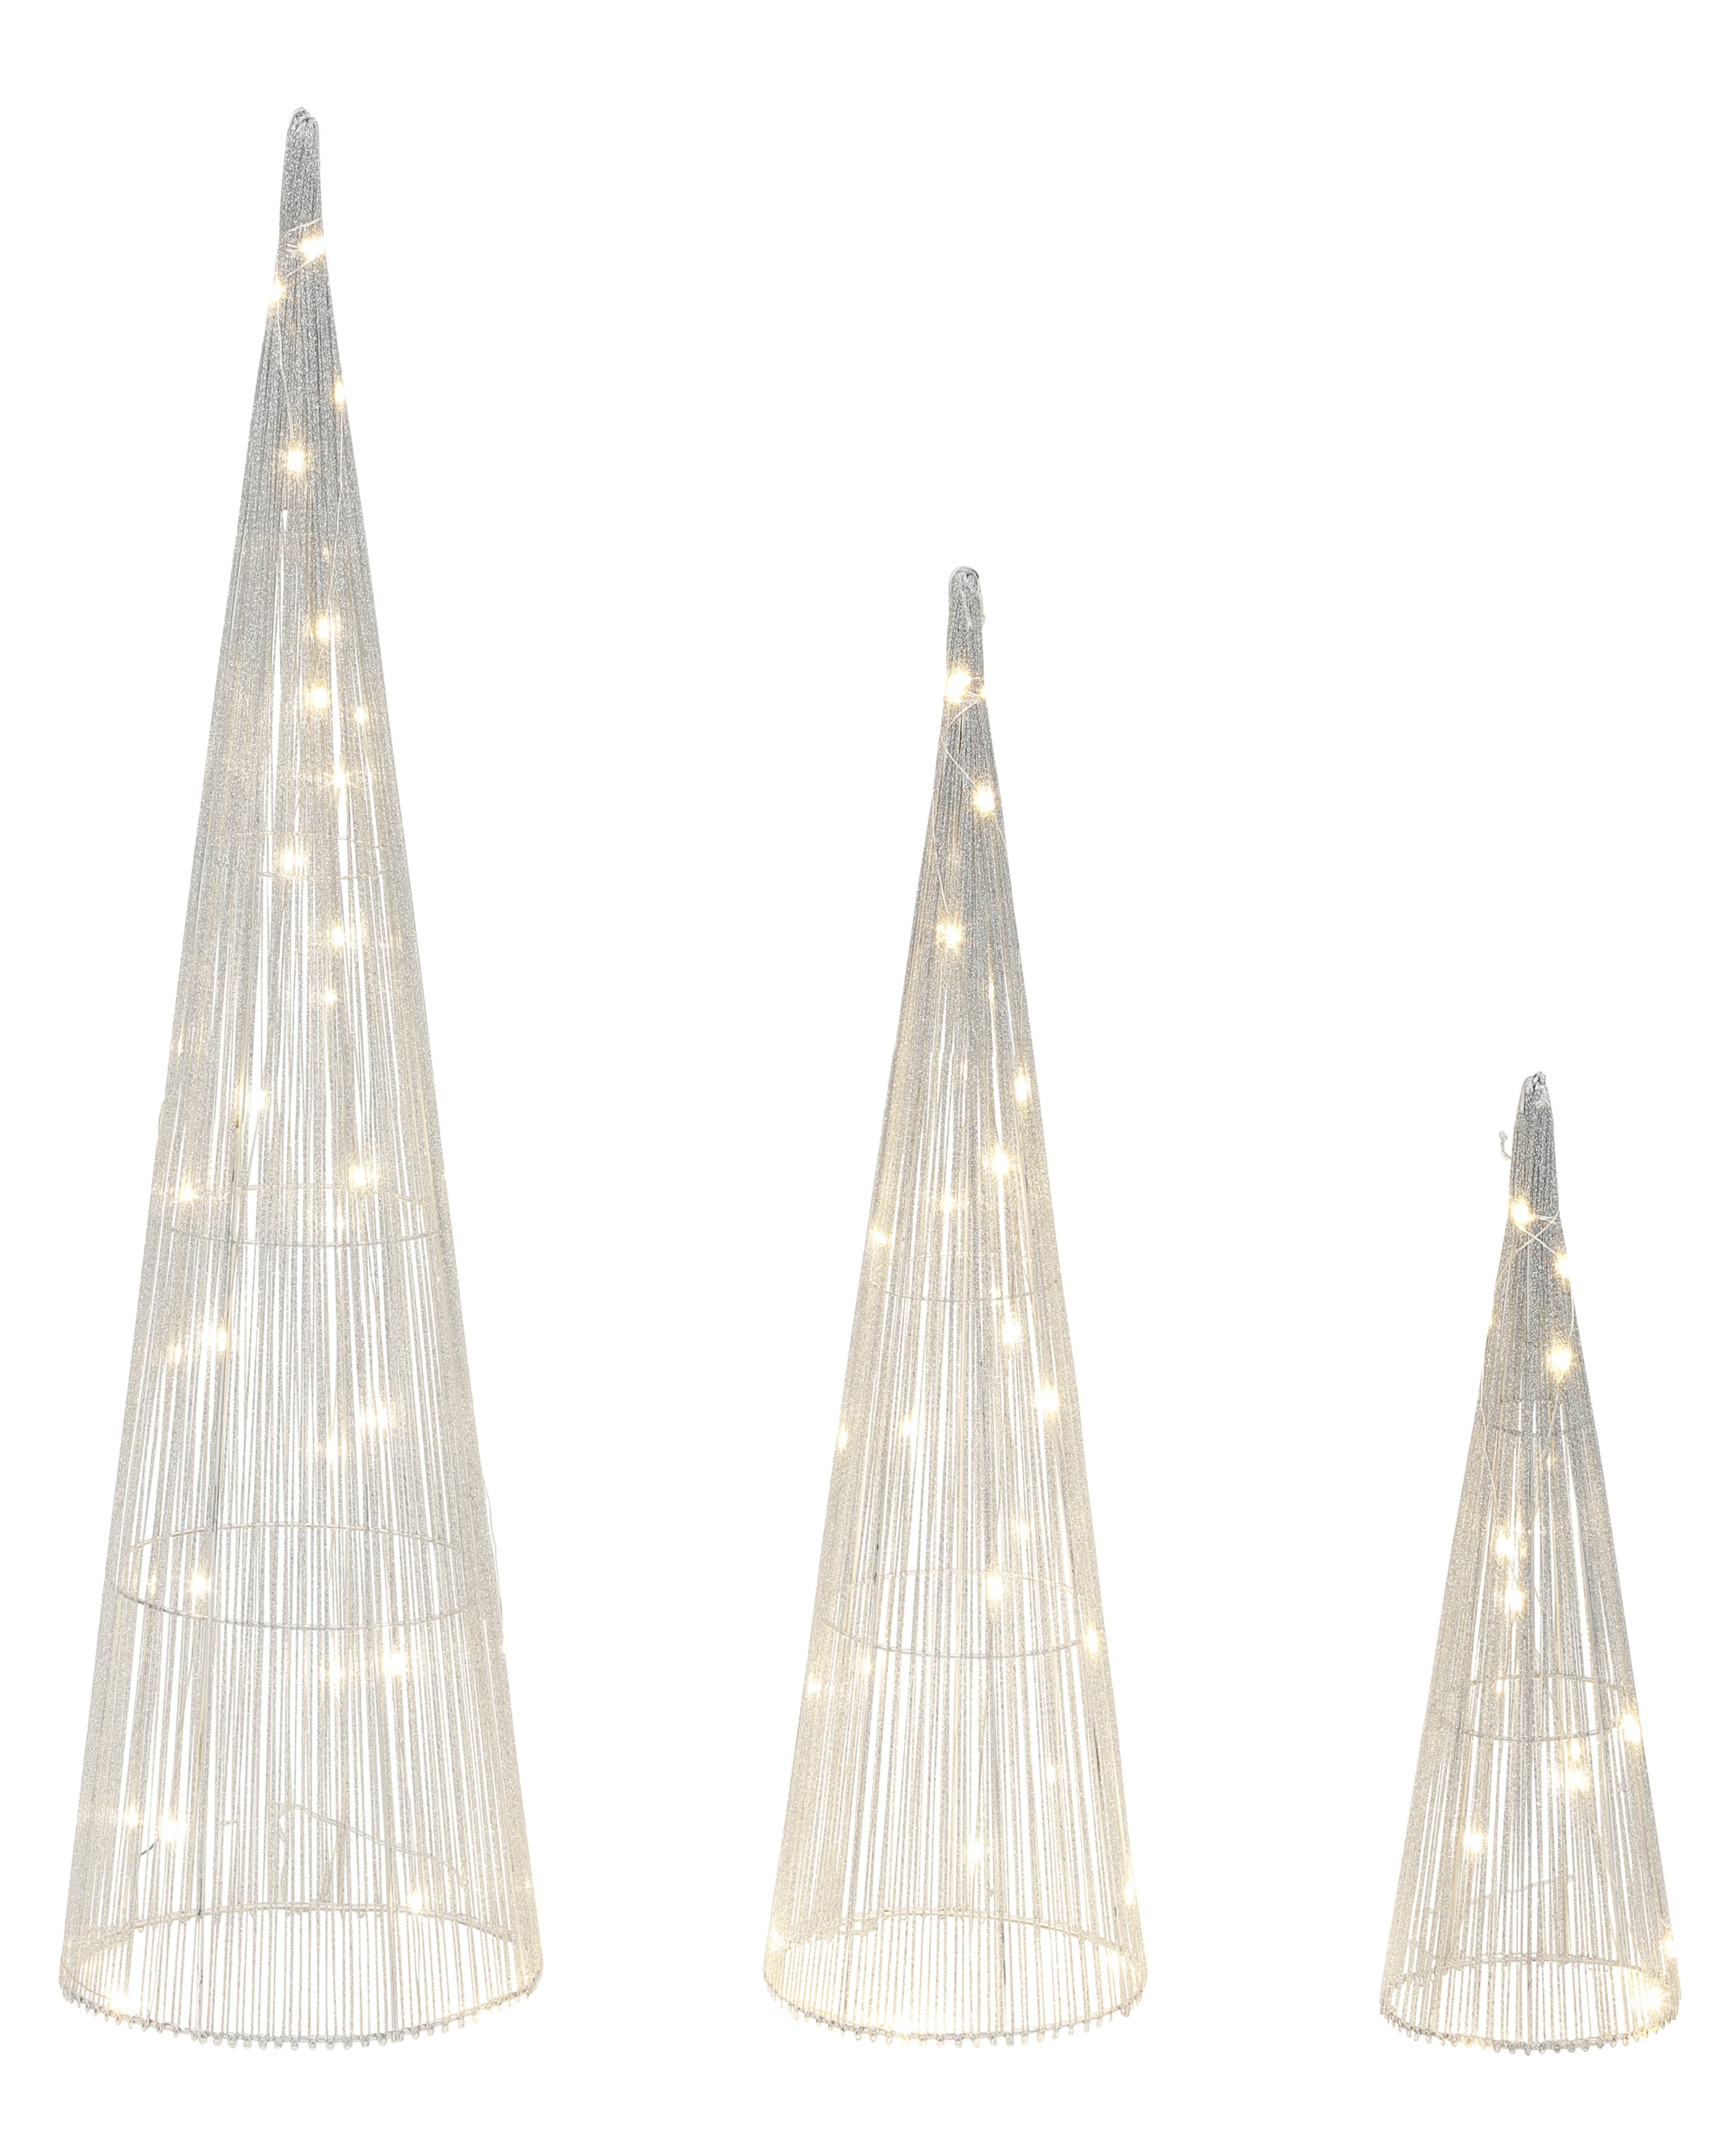 »Pyramiden mit mit Leucht LED-Beleuchtung, schimmernde Weihnachtsdeko, Effektvolle Pyramiden LED- | kaufen online LED flammig-flammig, Dekolicht Bäume«, in Jahren Größen 3 3 90 Star-Max Garantie XXL